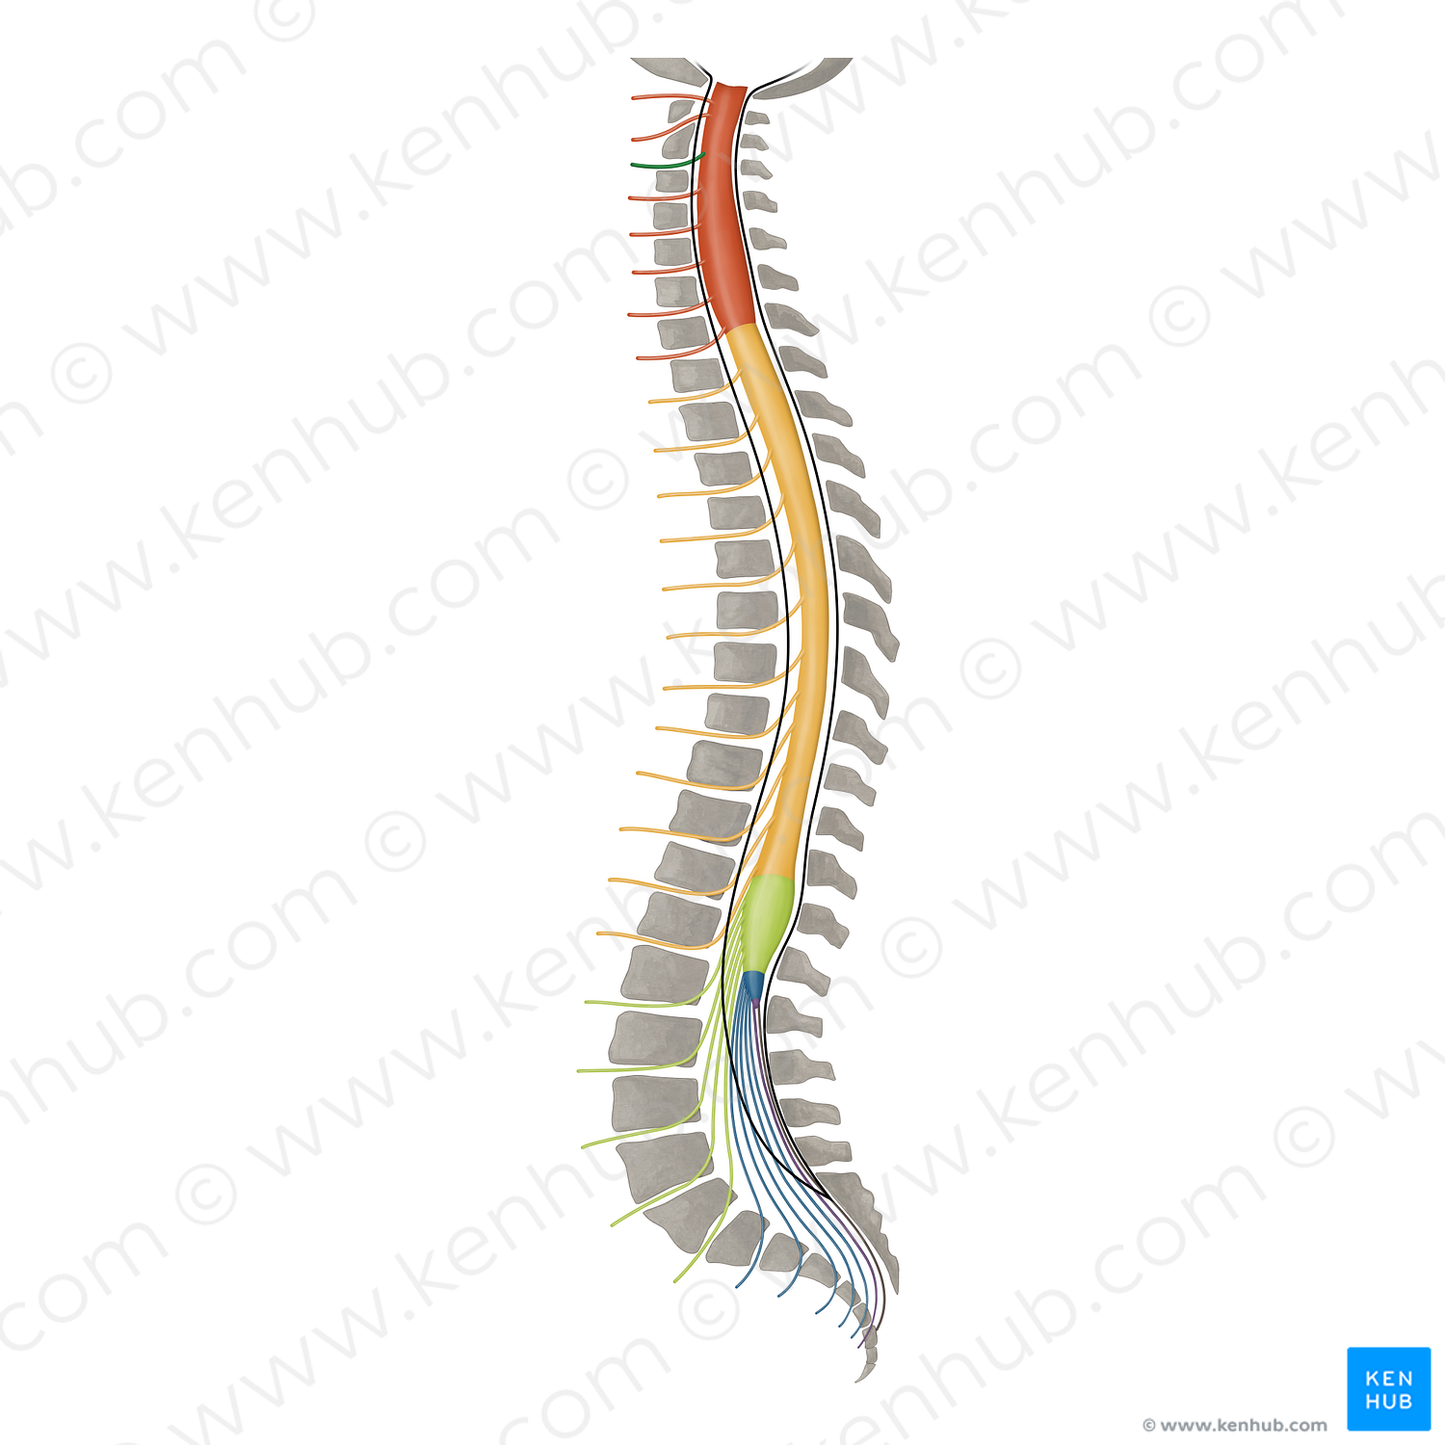 Spinal nerve C3 (#16412)